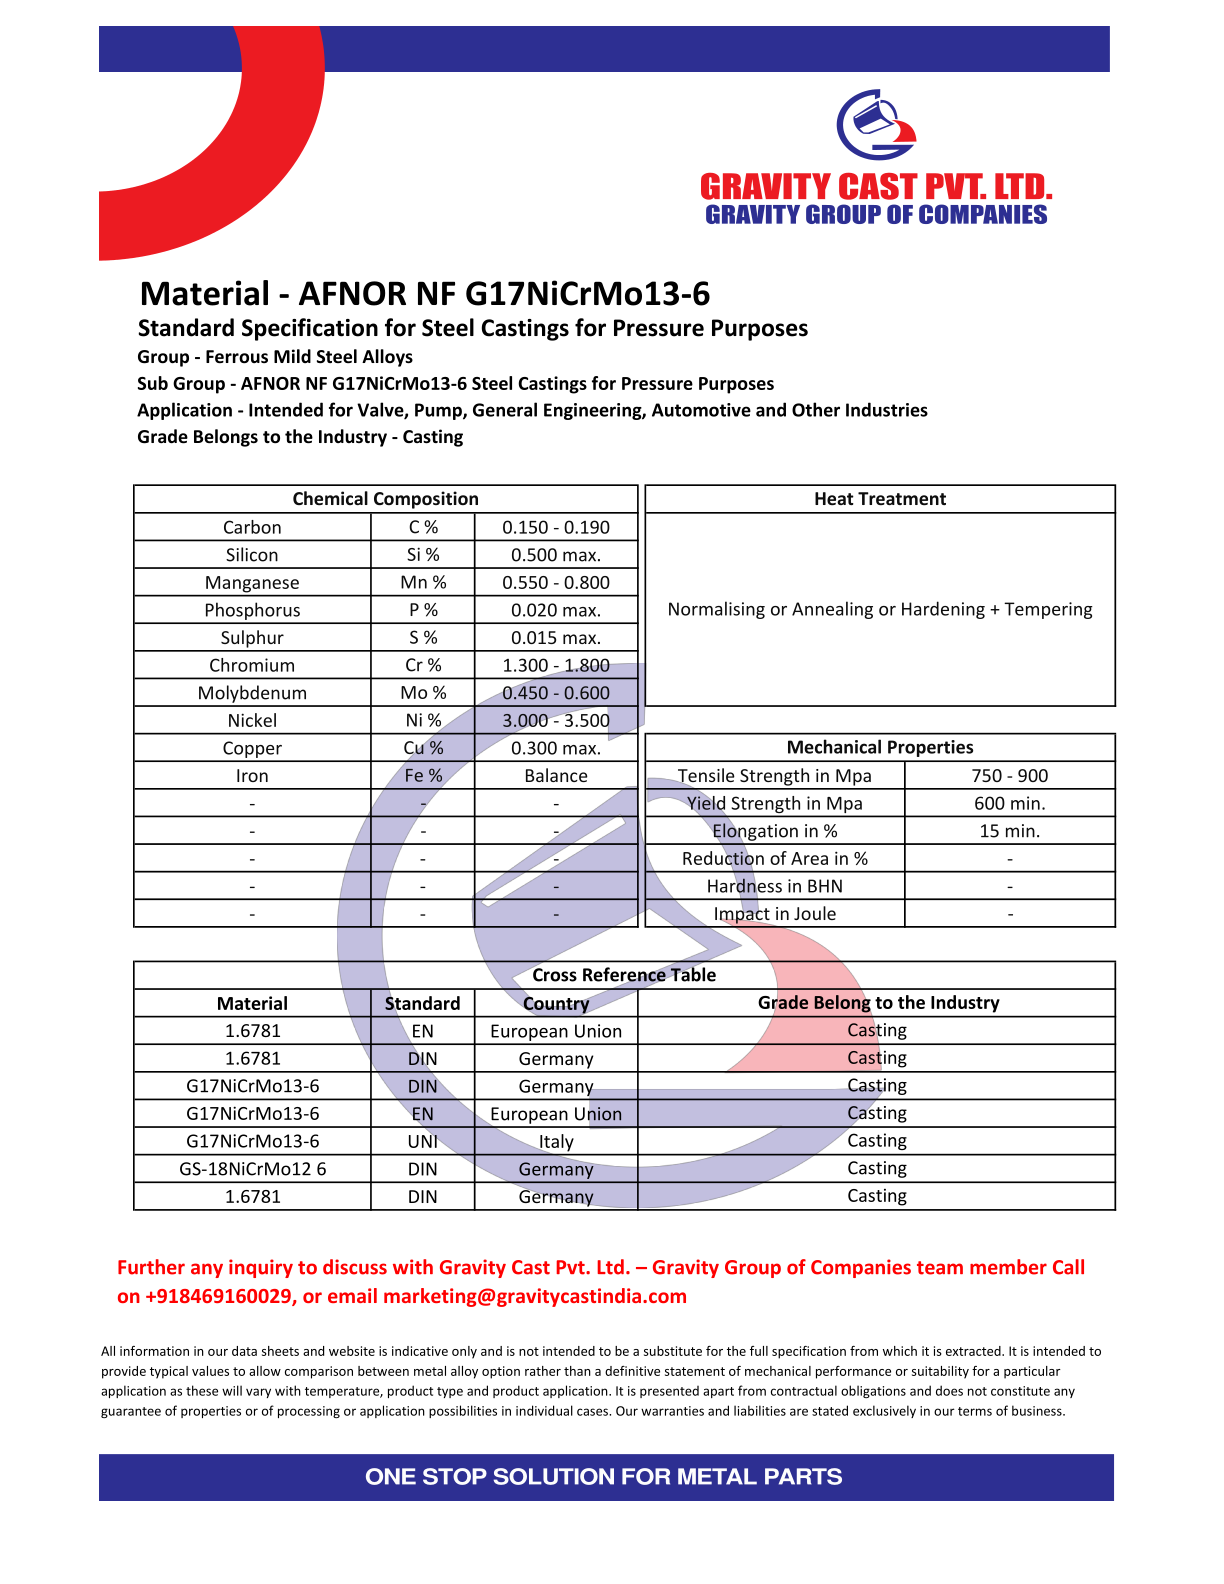 AFNOR NF G17NiCrMo13-6.pdf